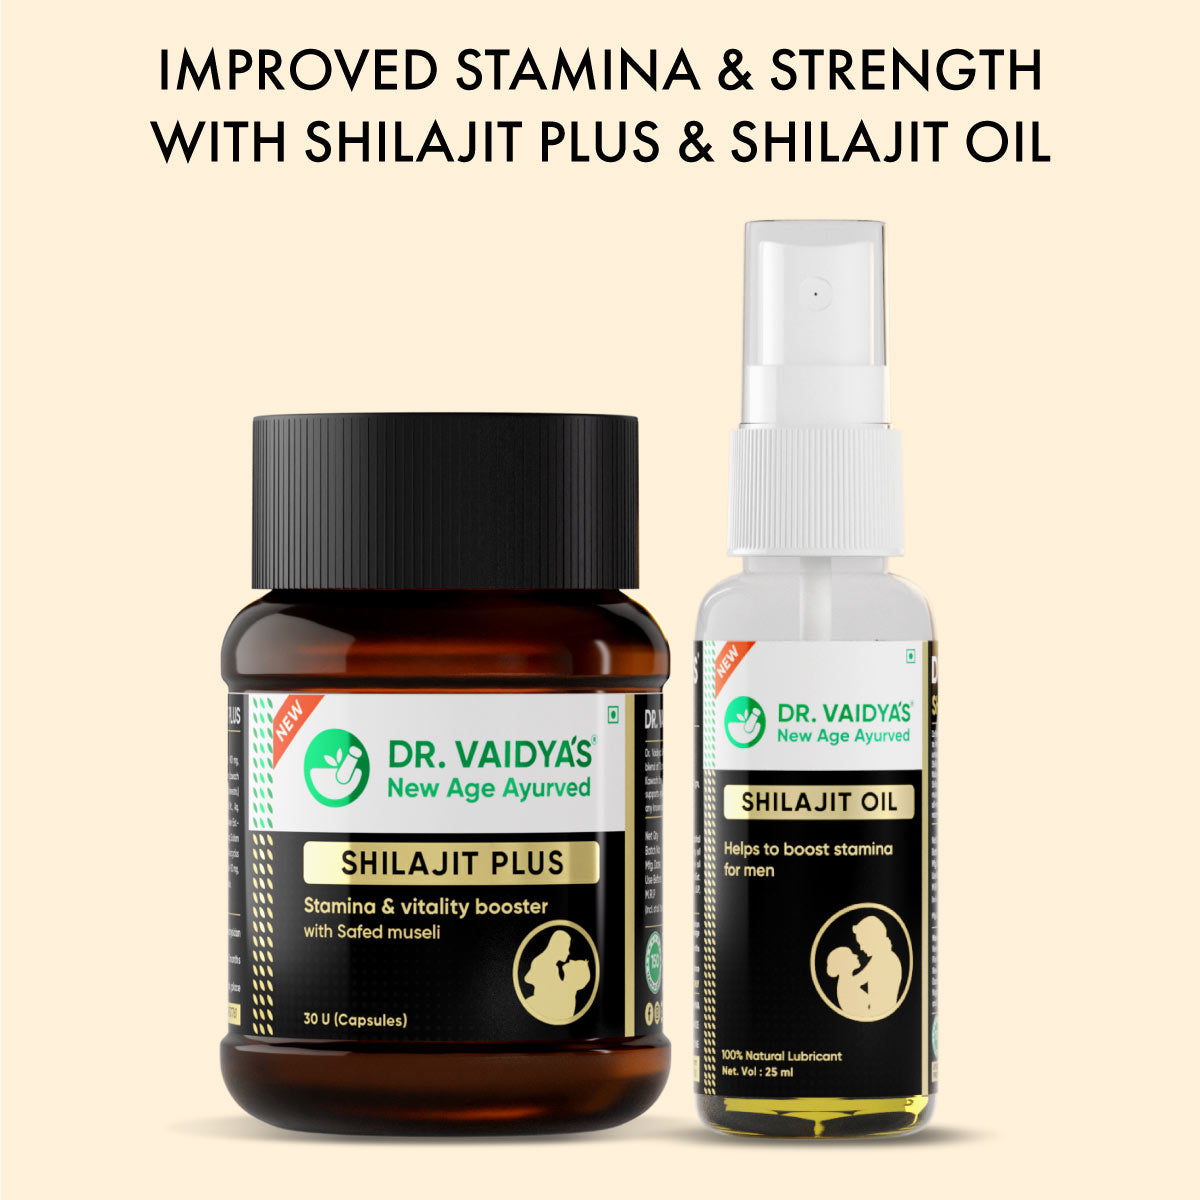 Dr. Vaidya's Shilajit Plus + FREE Shilajit Oil